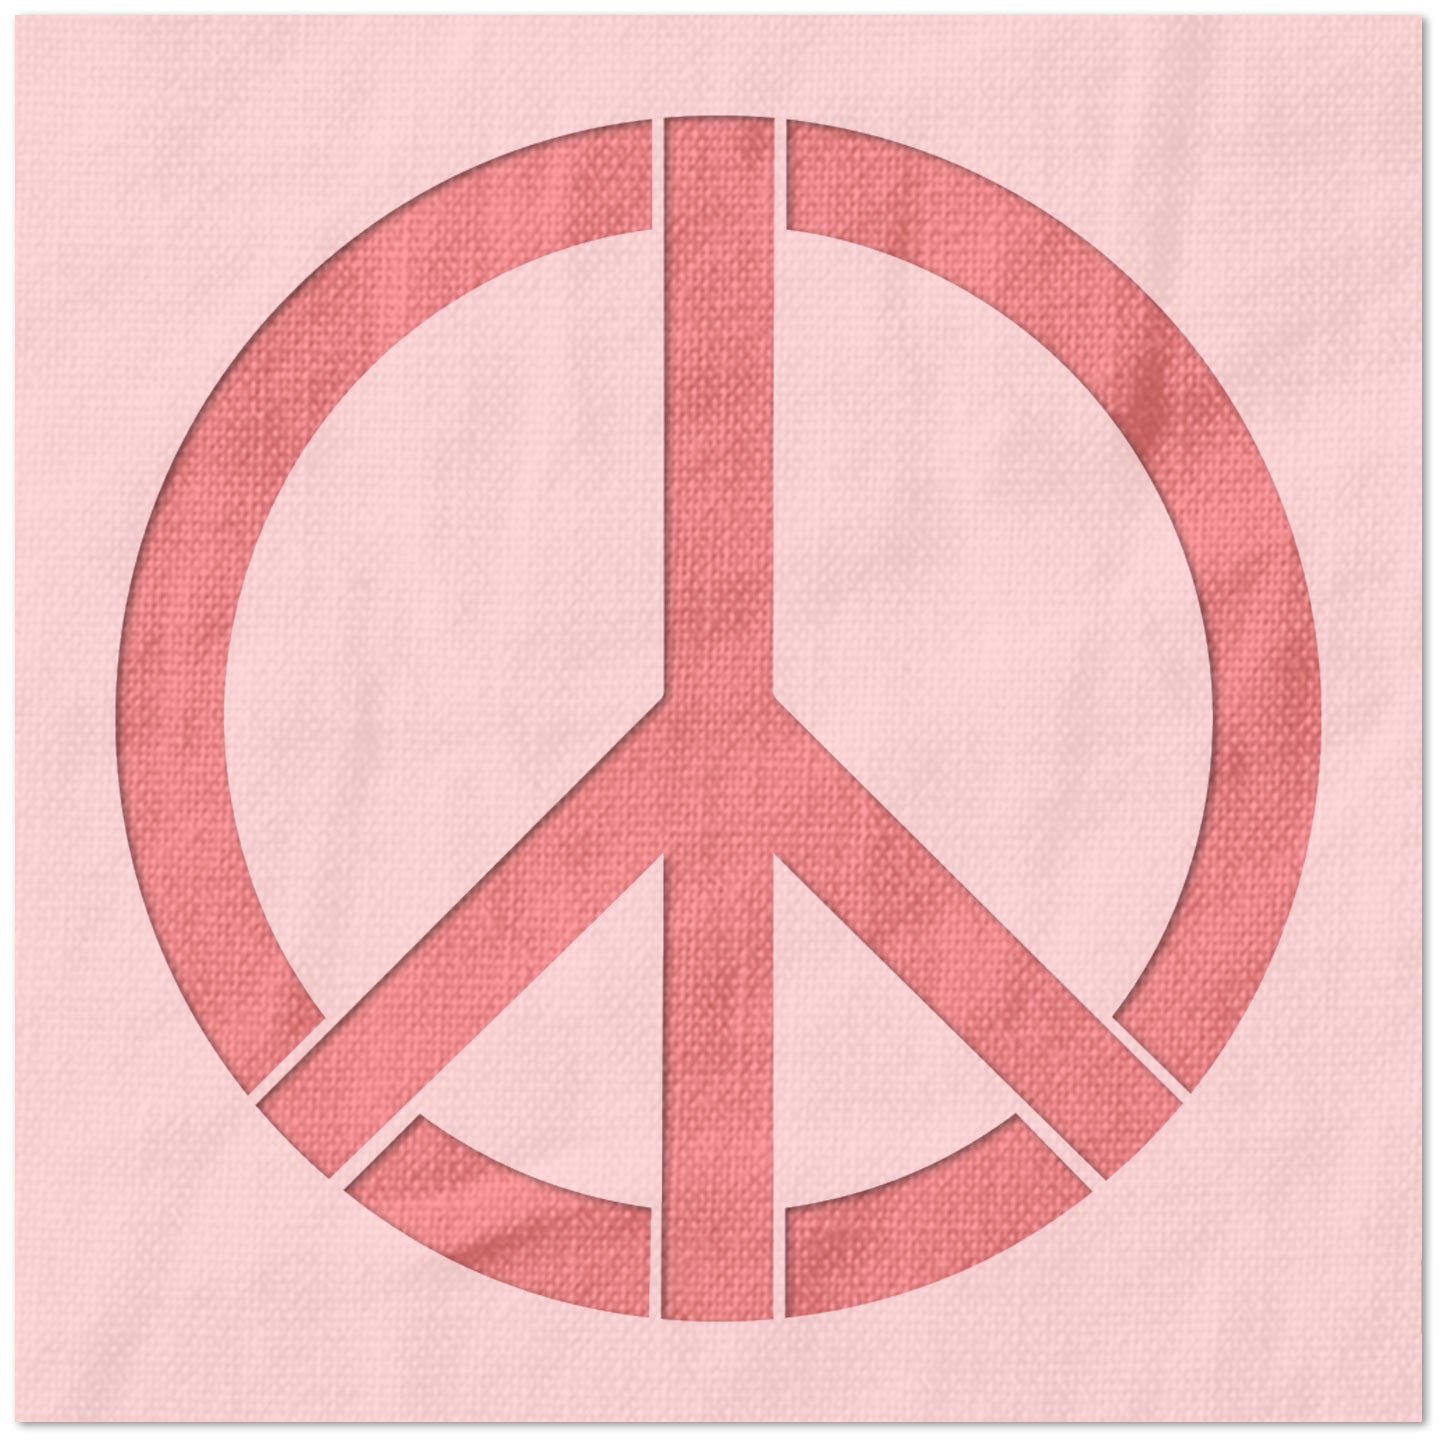 Peace Symbol Stencil